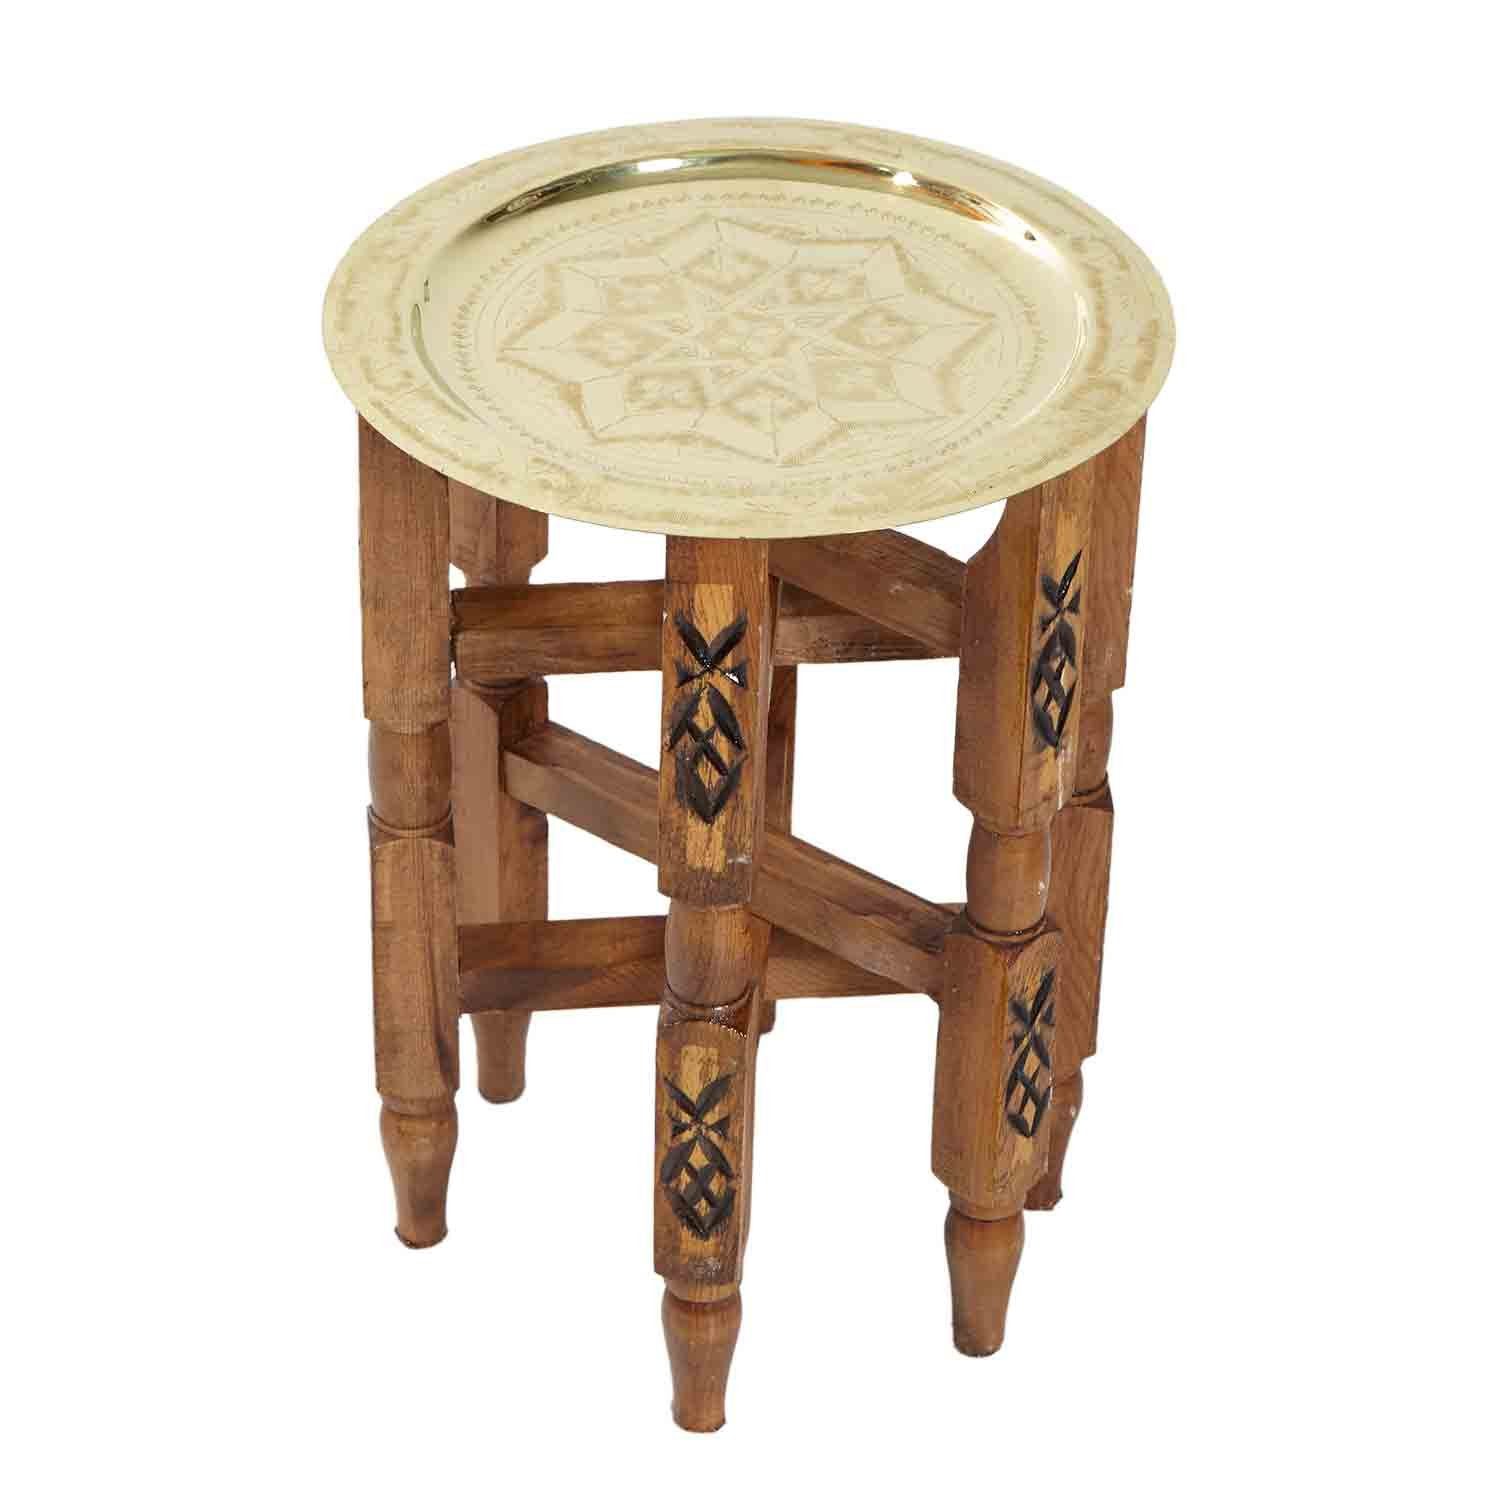 Casa Moro Beistelltisch Orientalischer Teetisch marokkanischer Beistelltisch mit Messing - Tablett Ø 30 cm, Handgefertigter Holz Tisch Klapptisch mit Serviertablett Farbe Gold, Karam 30, TA6158, Handmade